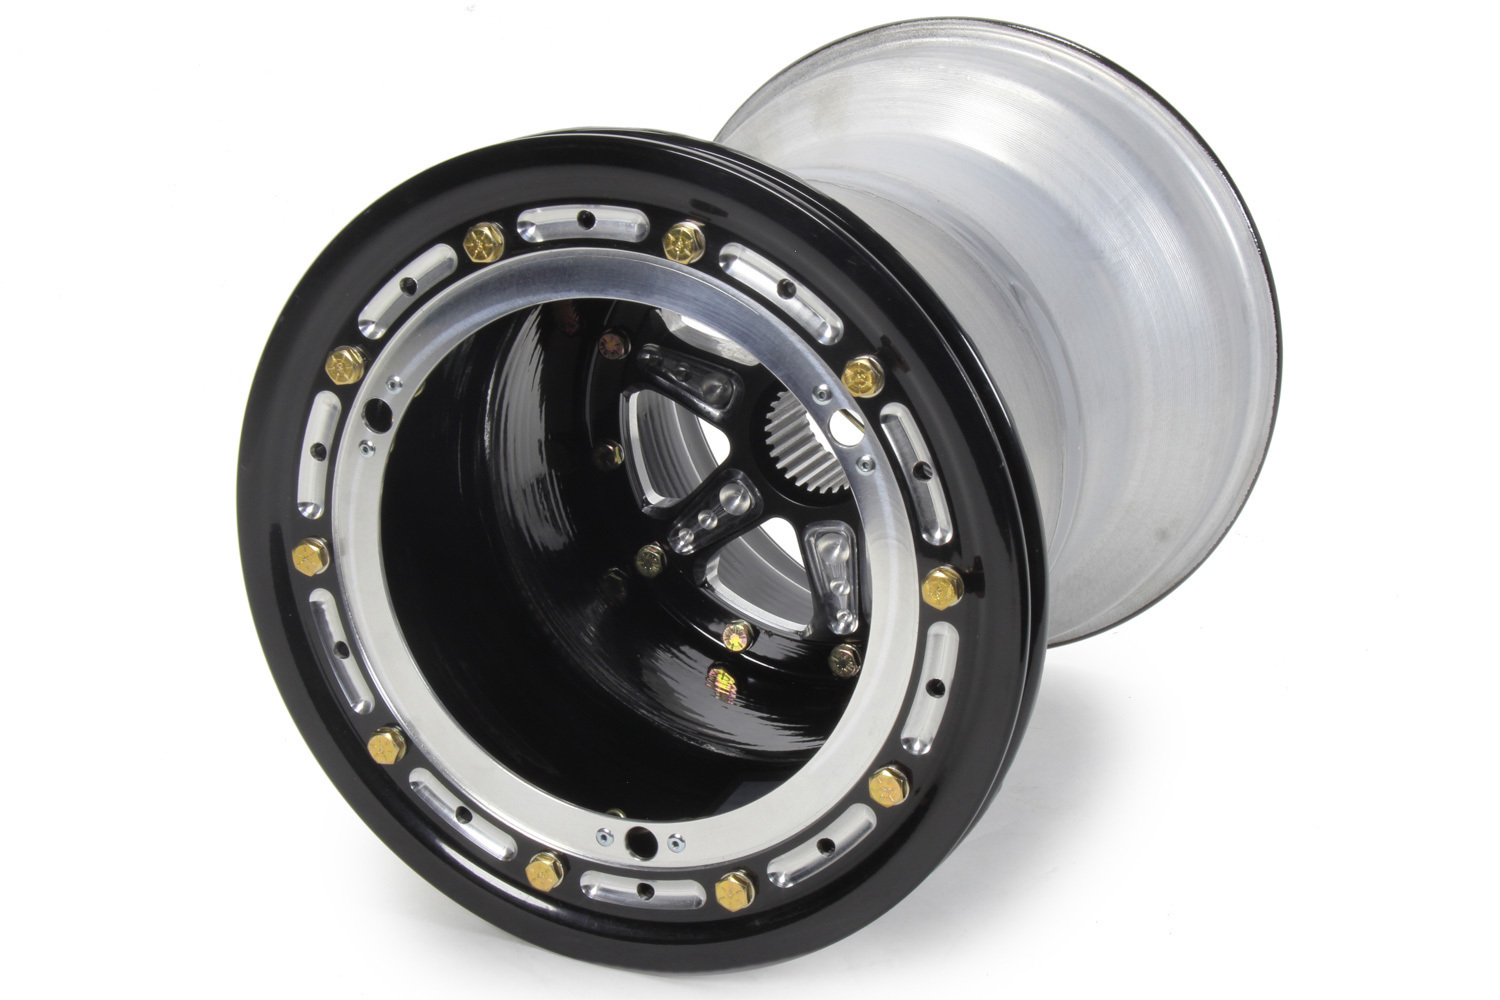 Keizer Aluminum Wheels 10136SPBLB Wheel, 10 x 13 in, 6.000 in Backspace, Wide 5 Bolt Pattern, Aluminum, Black Anodized, Each